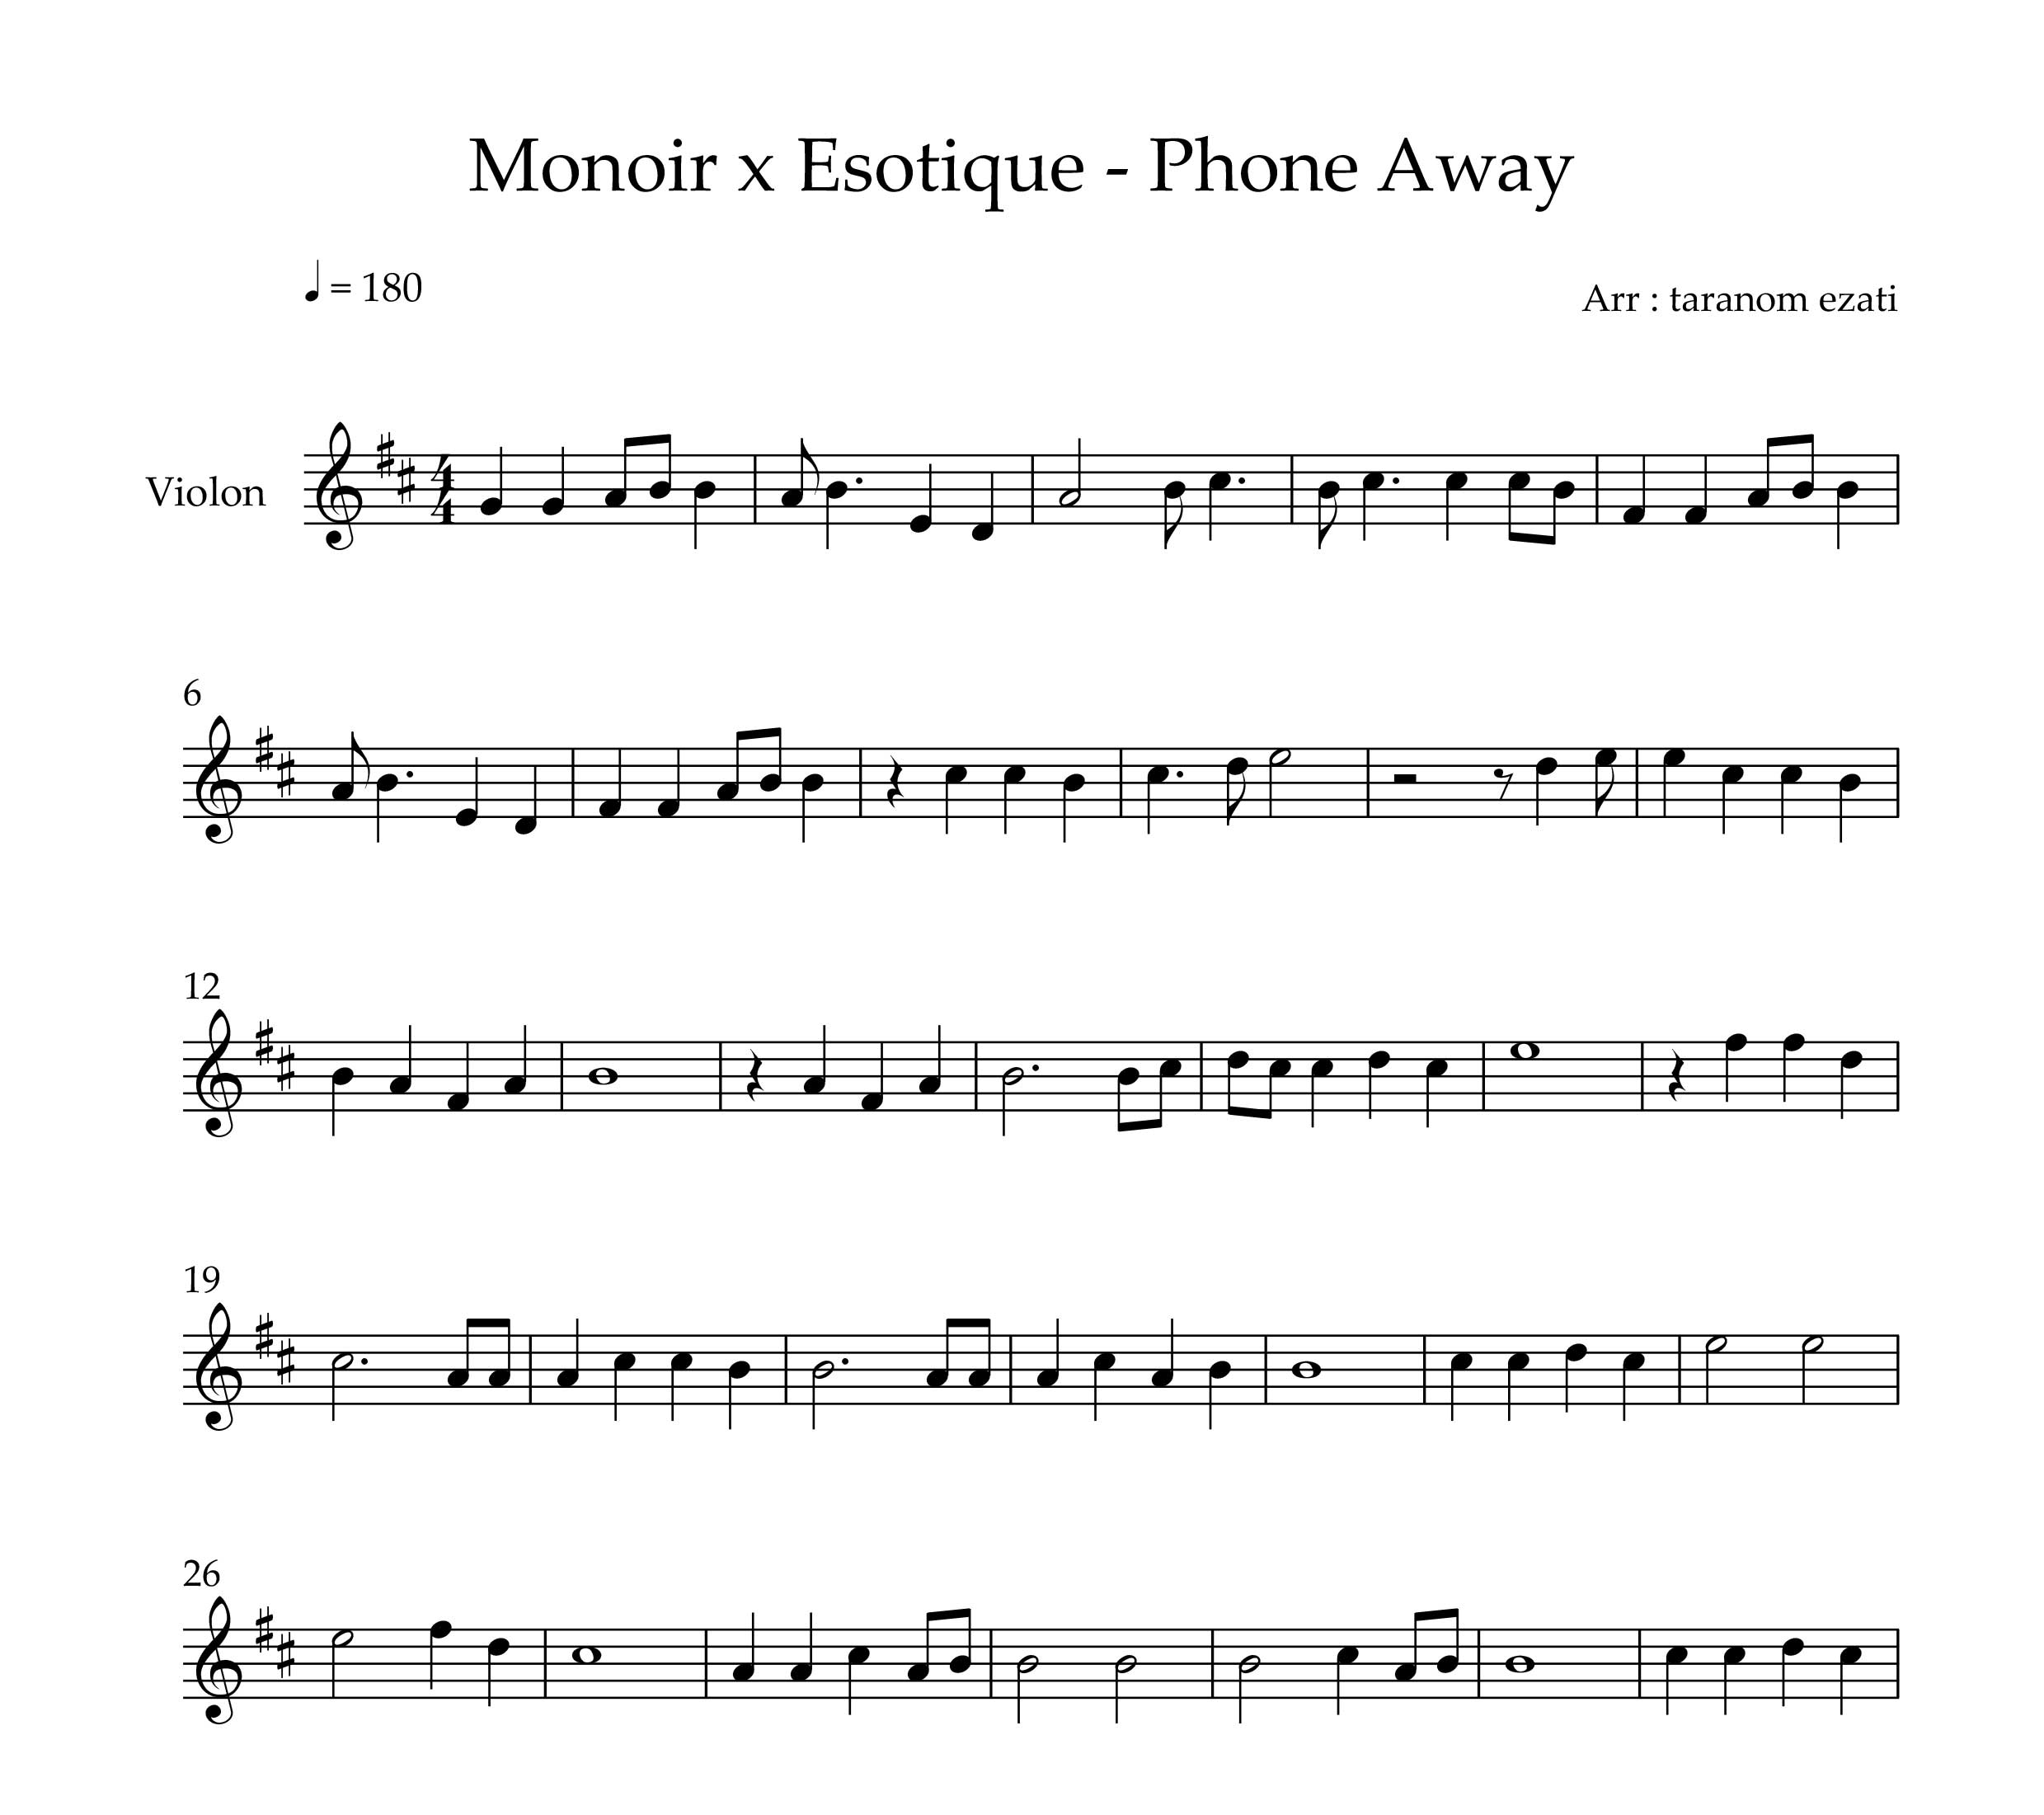 نت ویولن phone away از monoir x esotique